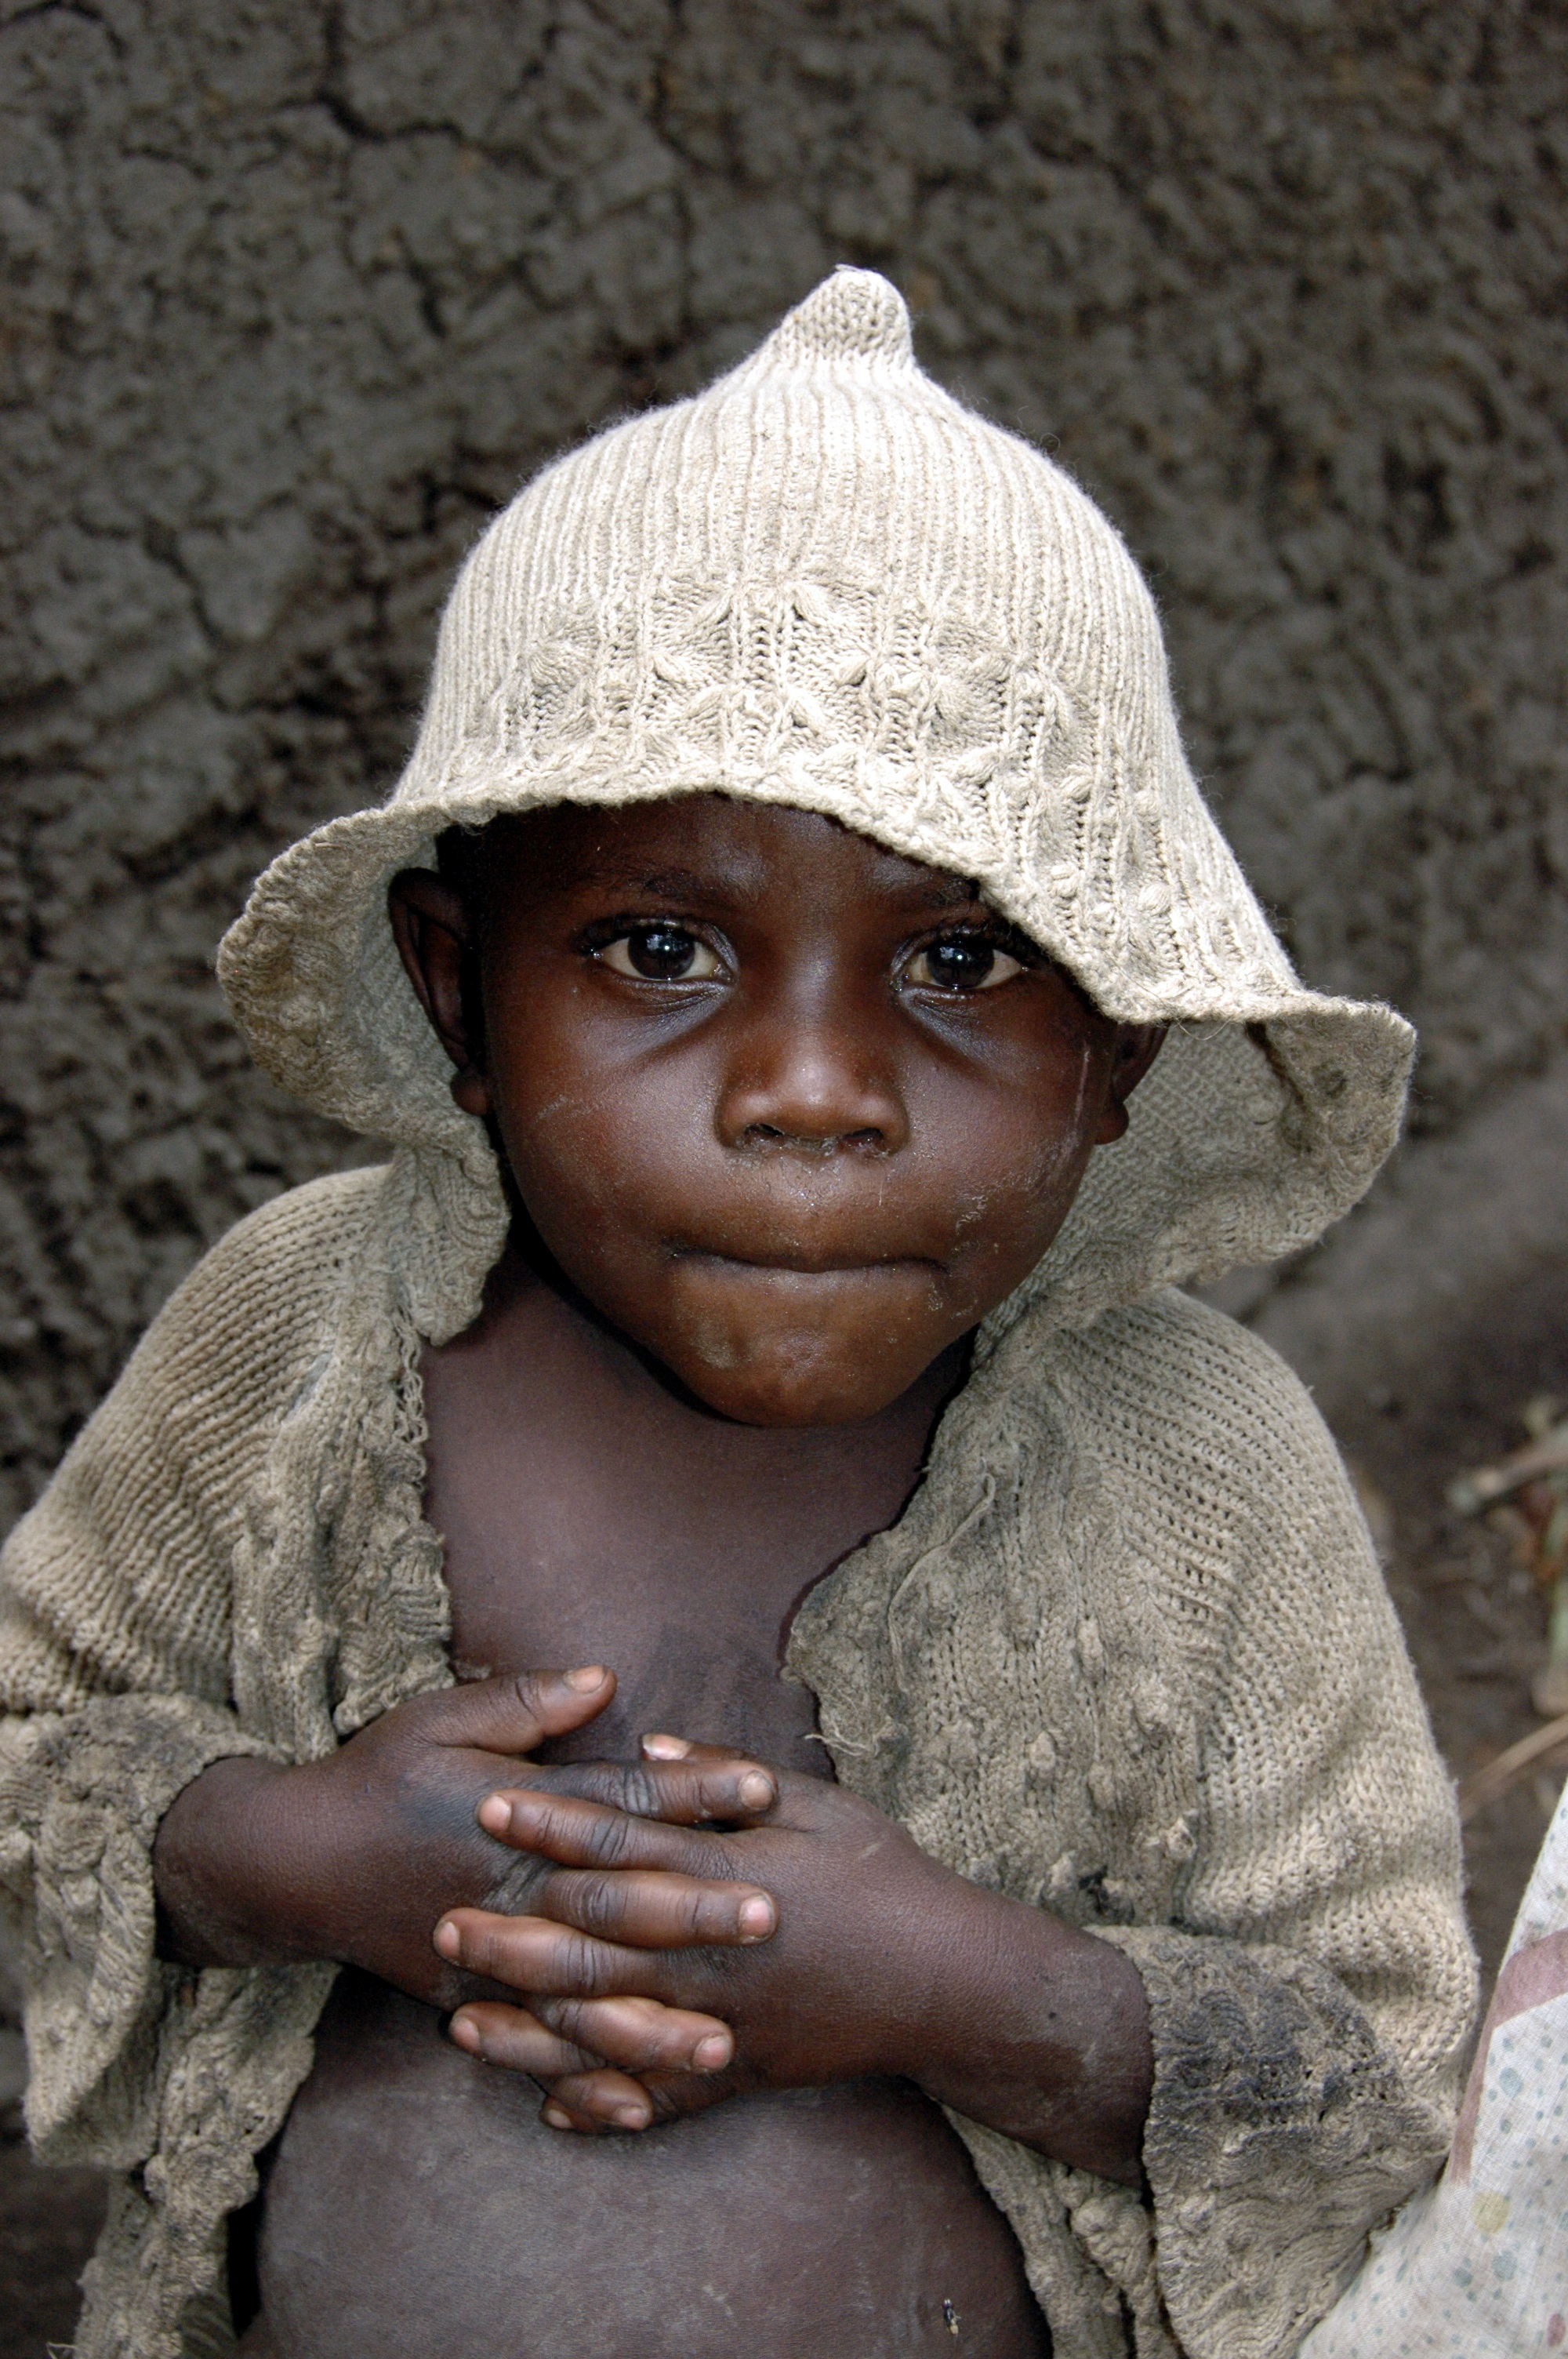 Congo, 2006